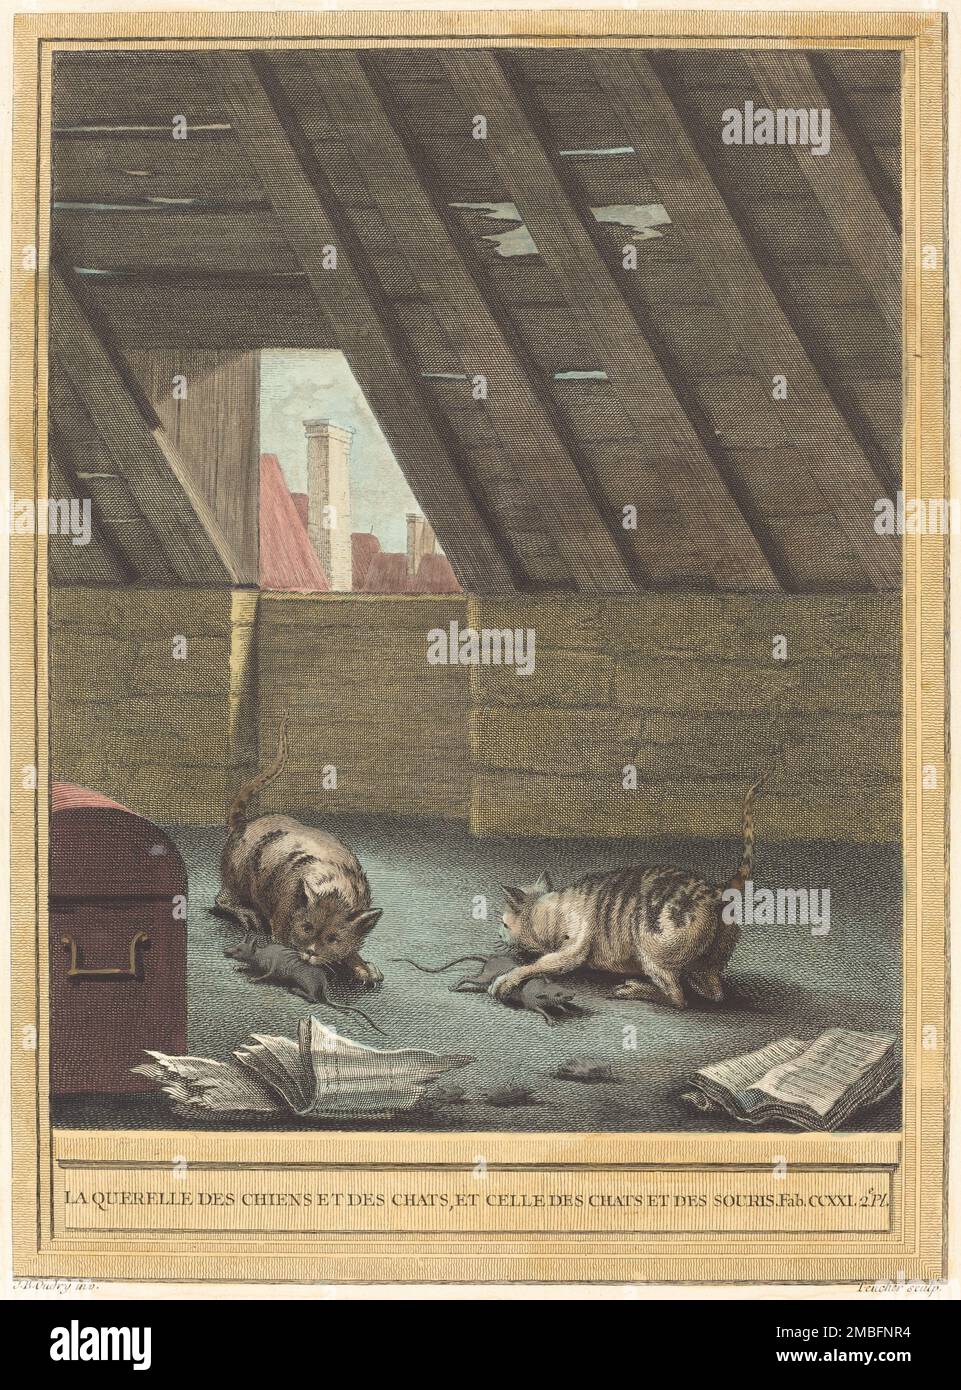 La querelle des chiens et des chats et celle des chats et des souris (The Quarrel of Cats and Dogs, and that of Cats and Mice), published 1759. Stock Photo